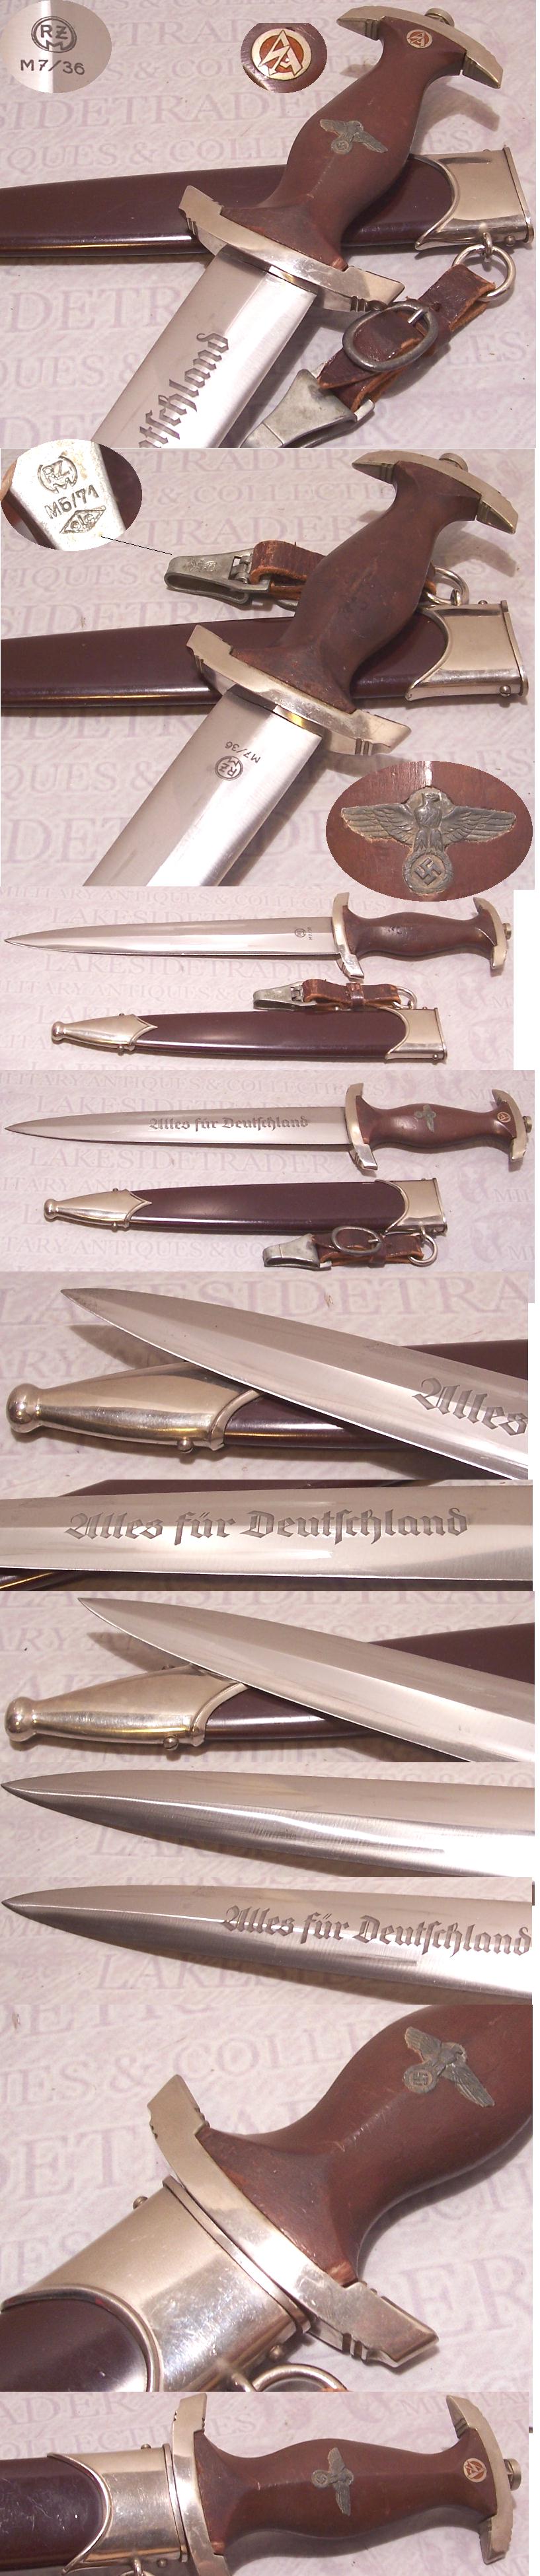 RZM 7/36 Horster SA Dagger